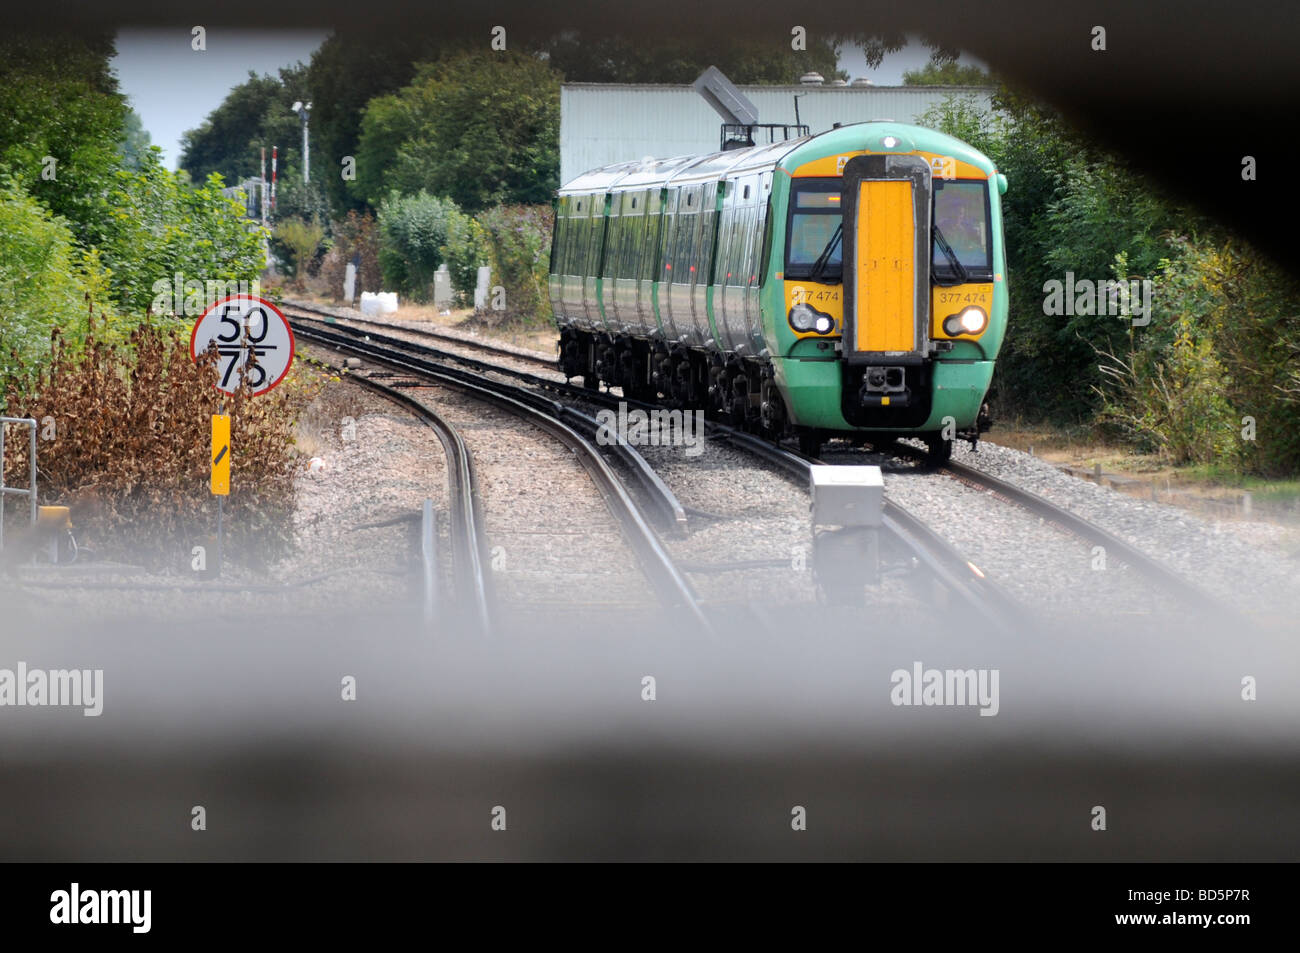 Image libre photo de train sur les voies de chemin de fer au passage à niveau près de London UK Banque D'Images